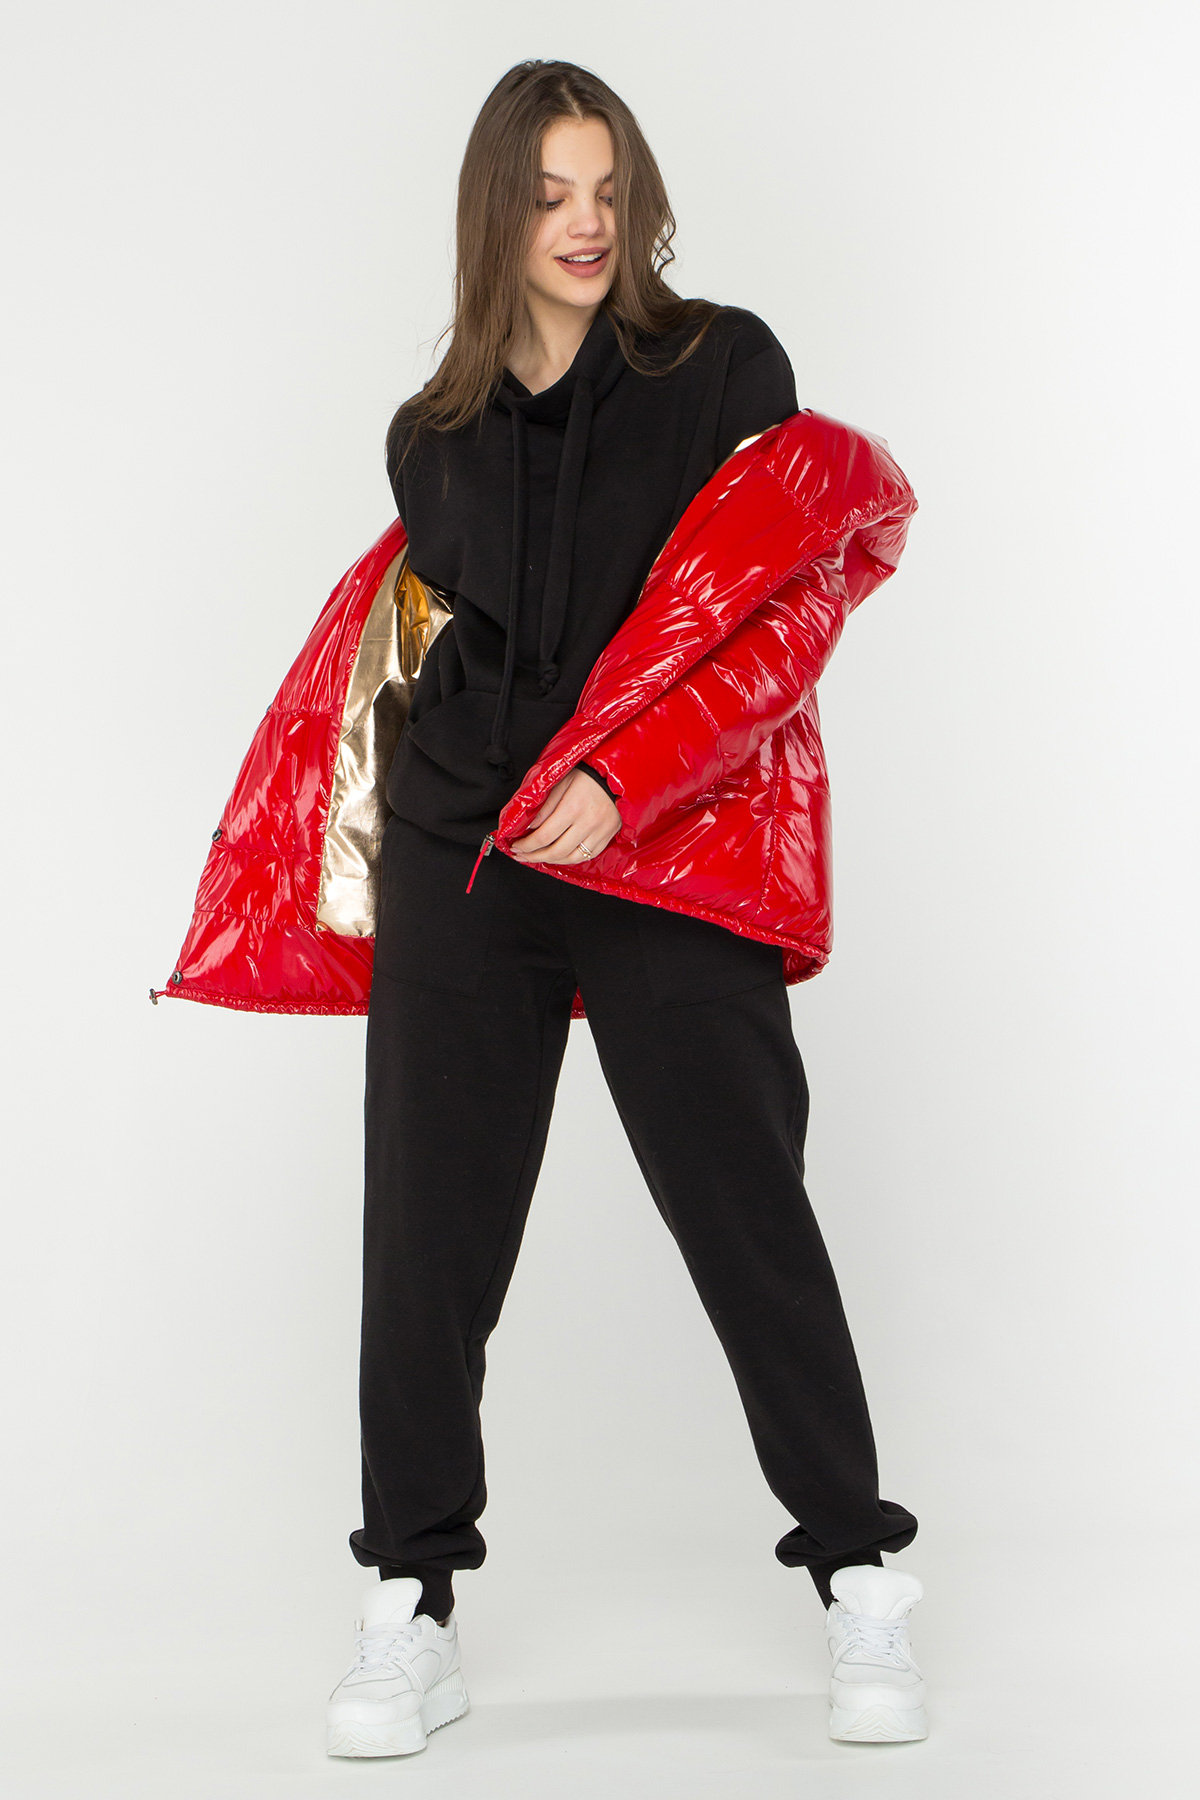 Лаковая куртка пуховик с поясом Бумер 8696 АРТ. 45034 Цвет: Красный - фото 1, интернет магазин tm-modus.ru